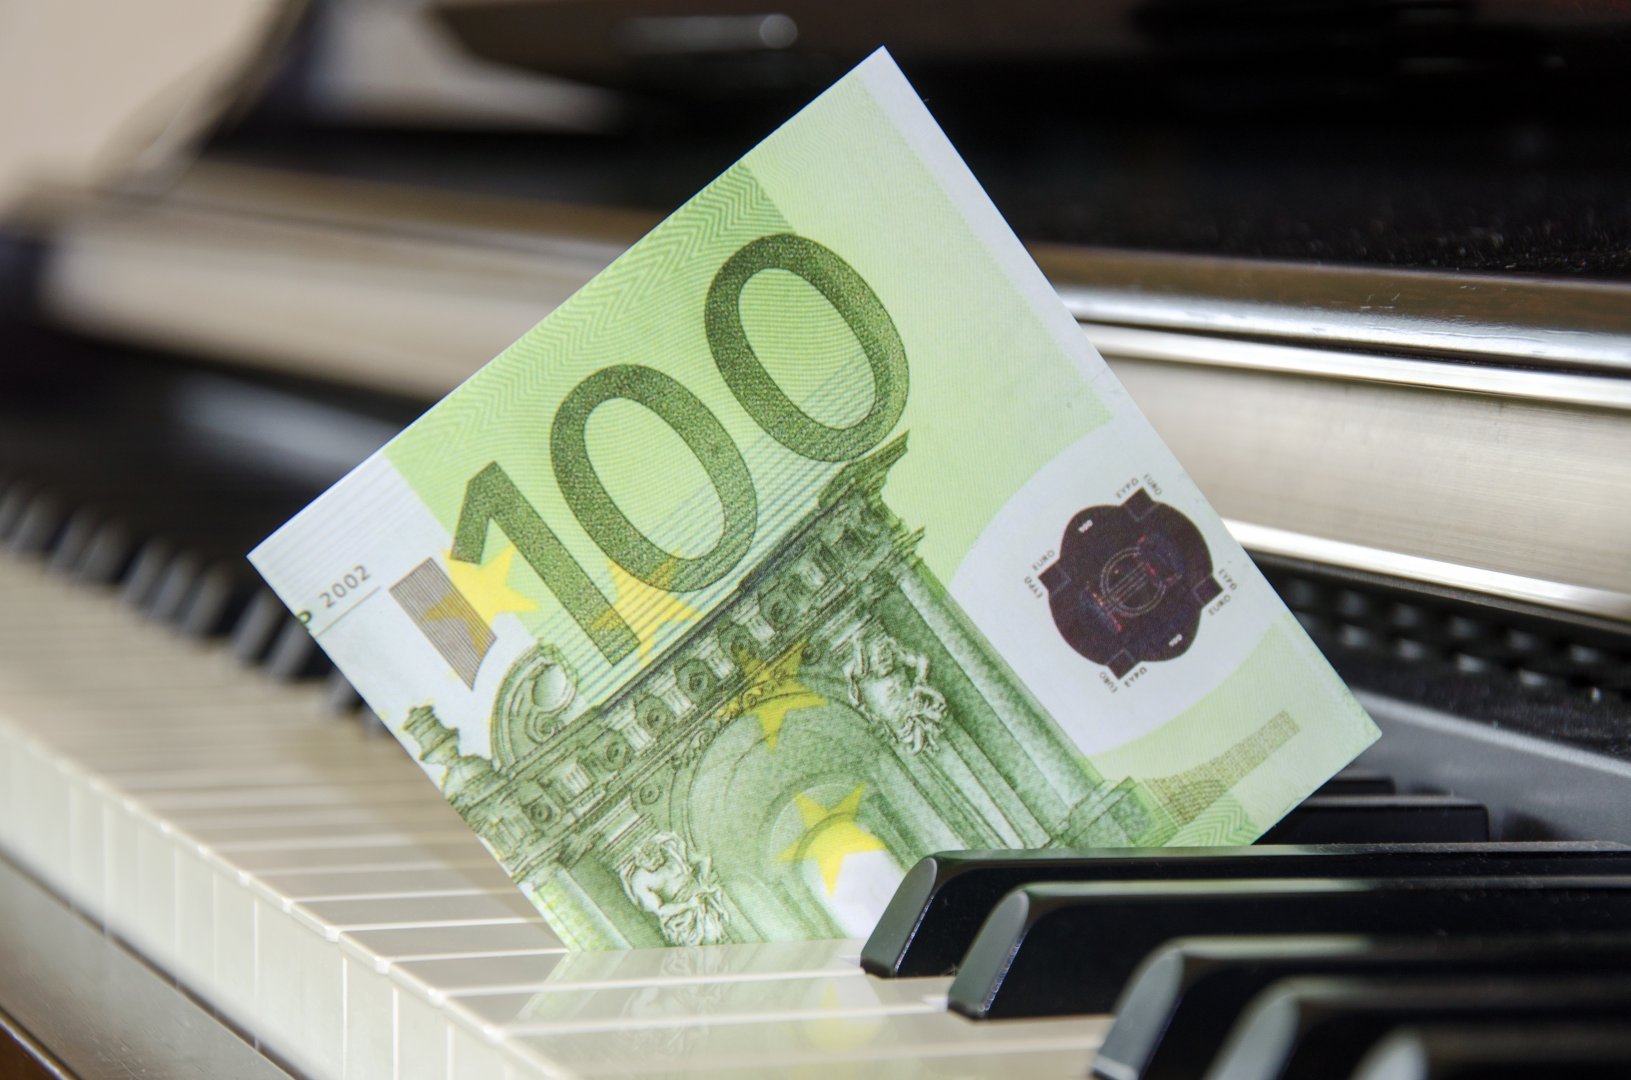 100 Euro zwischen Klaviertasten